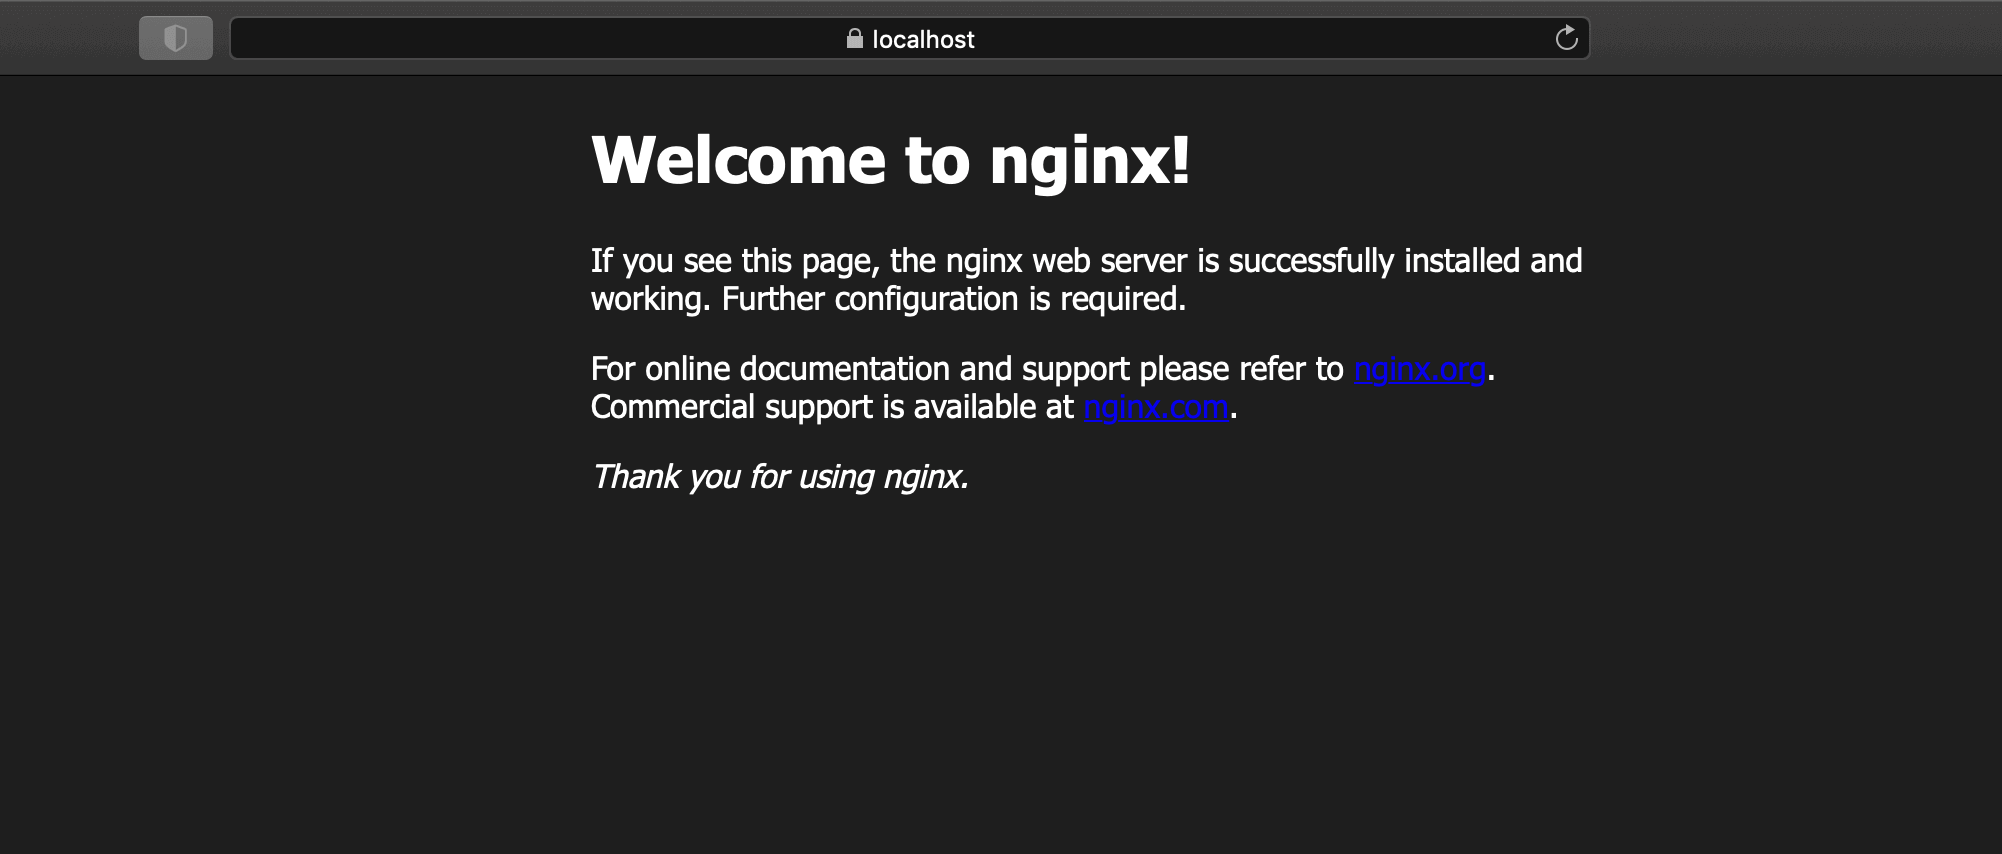 https通信でnginxのデフォルト画面にアクセス